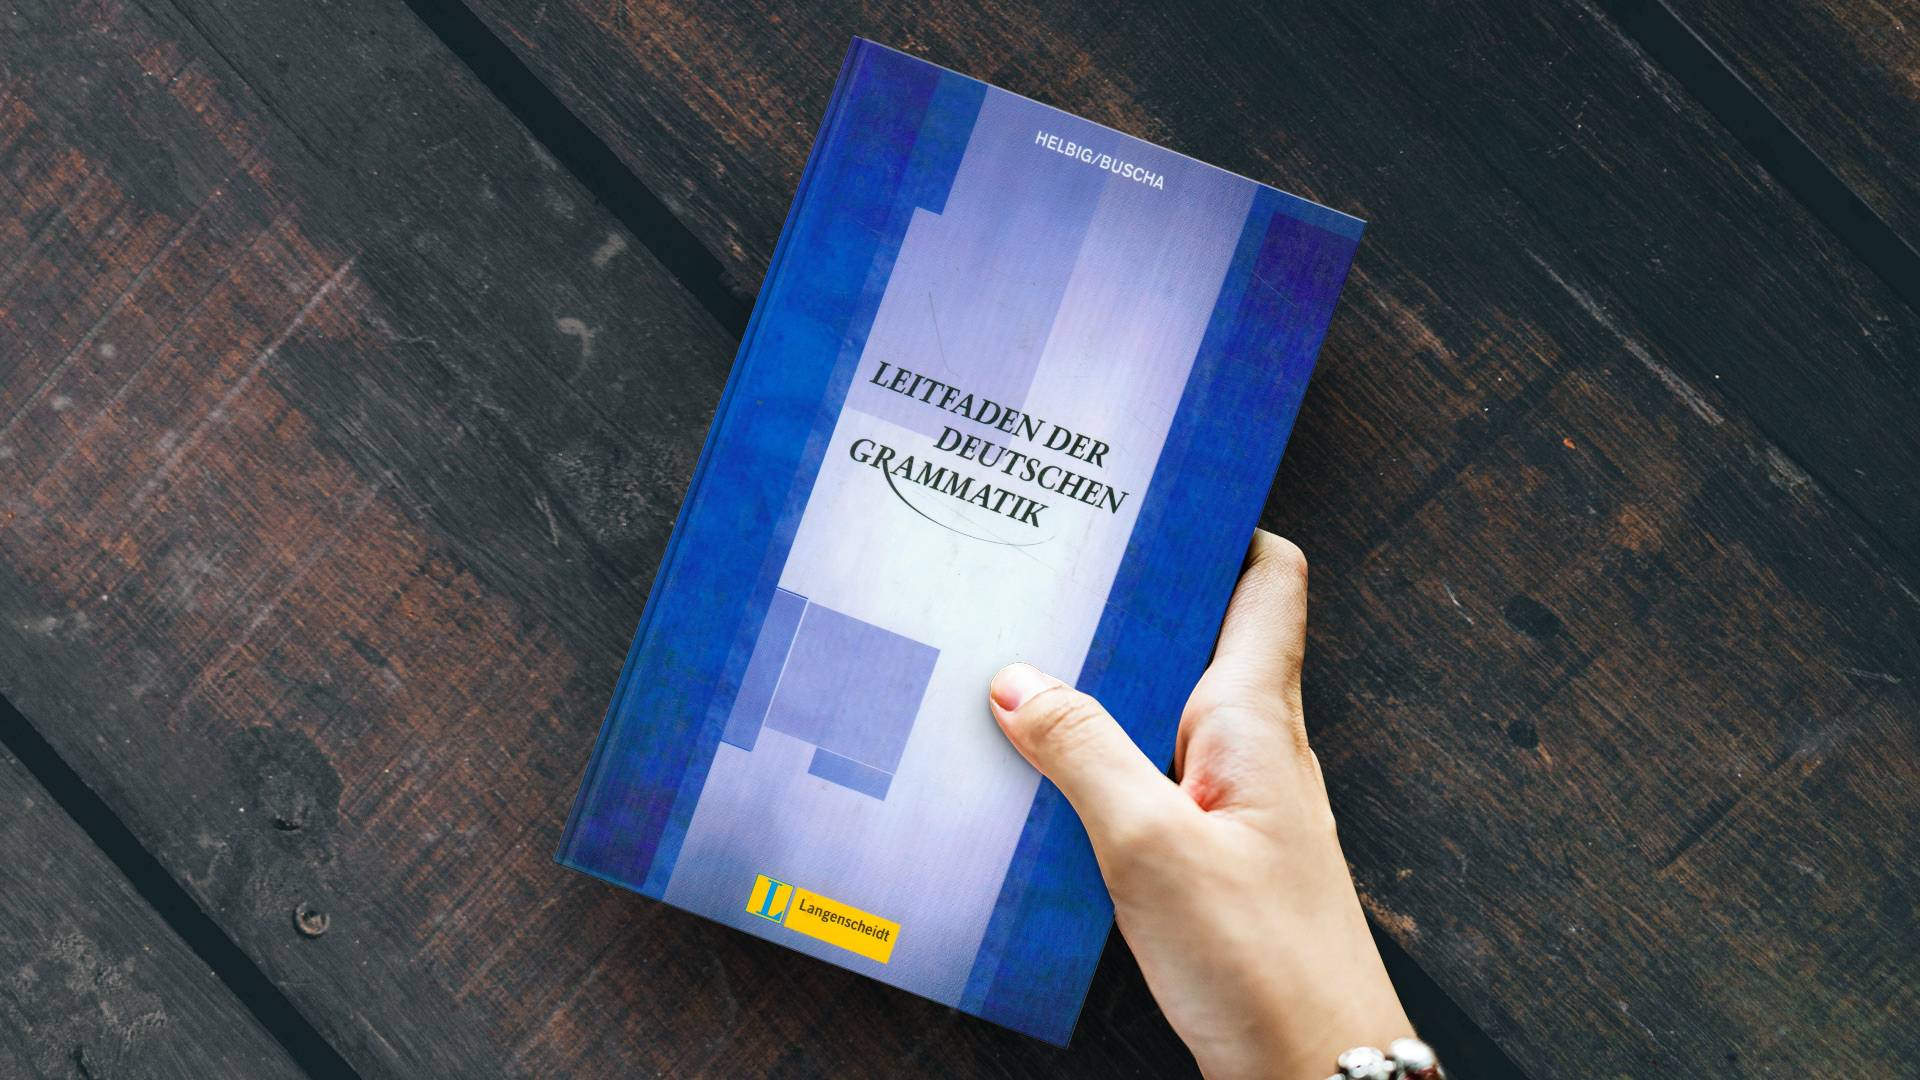 خرید کتاب زبان | زبان استور | Leitfaden Der Deutschen Grammatik | کتاب دستور زبان آلمانی